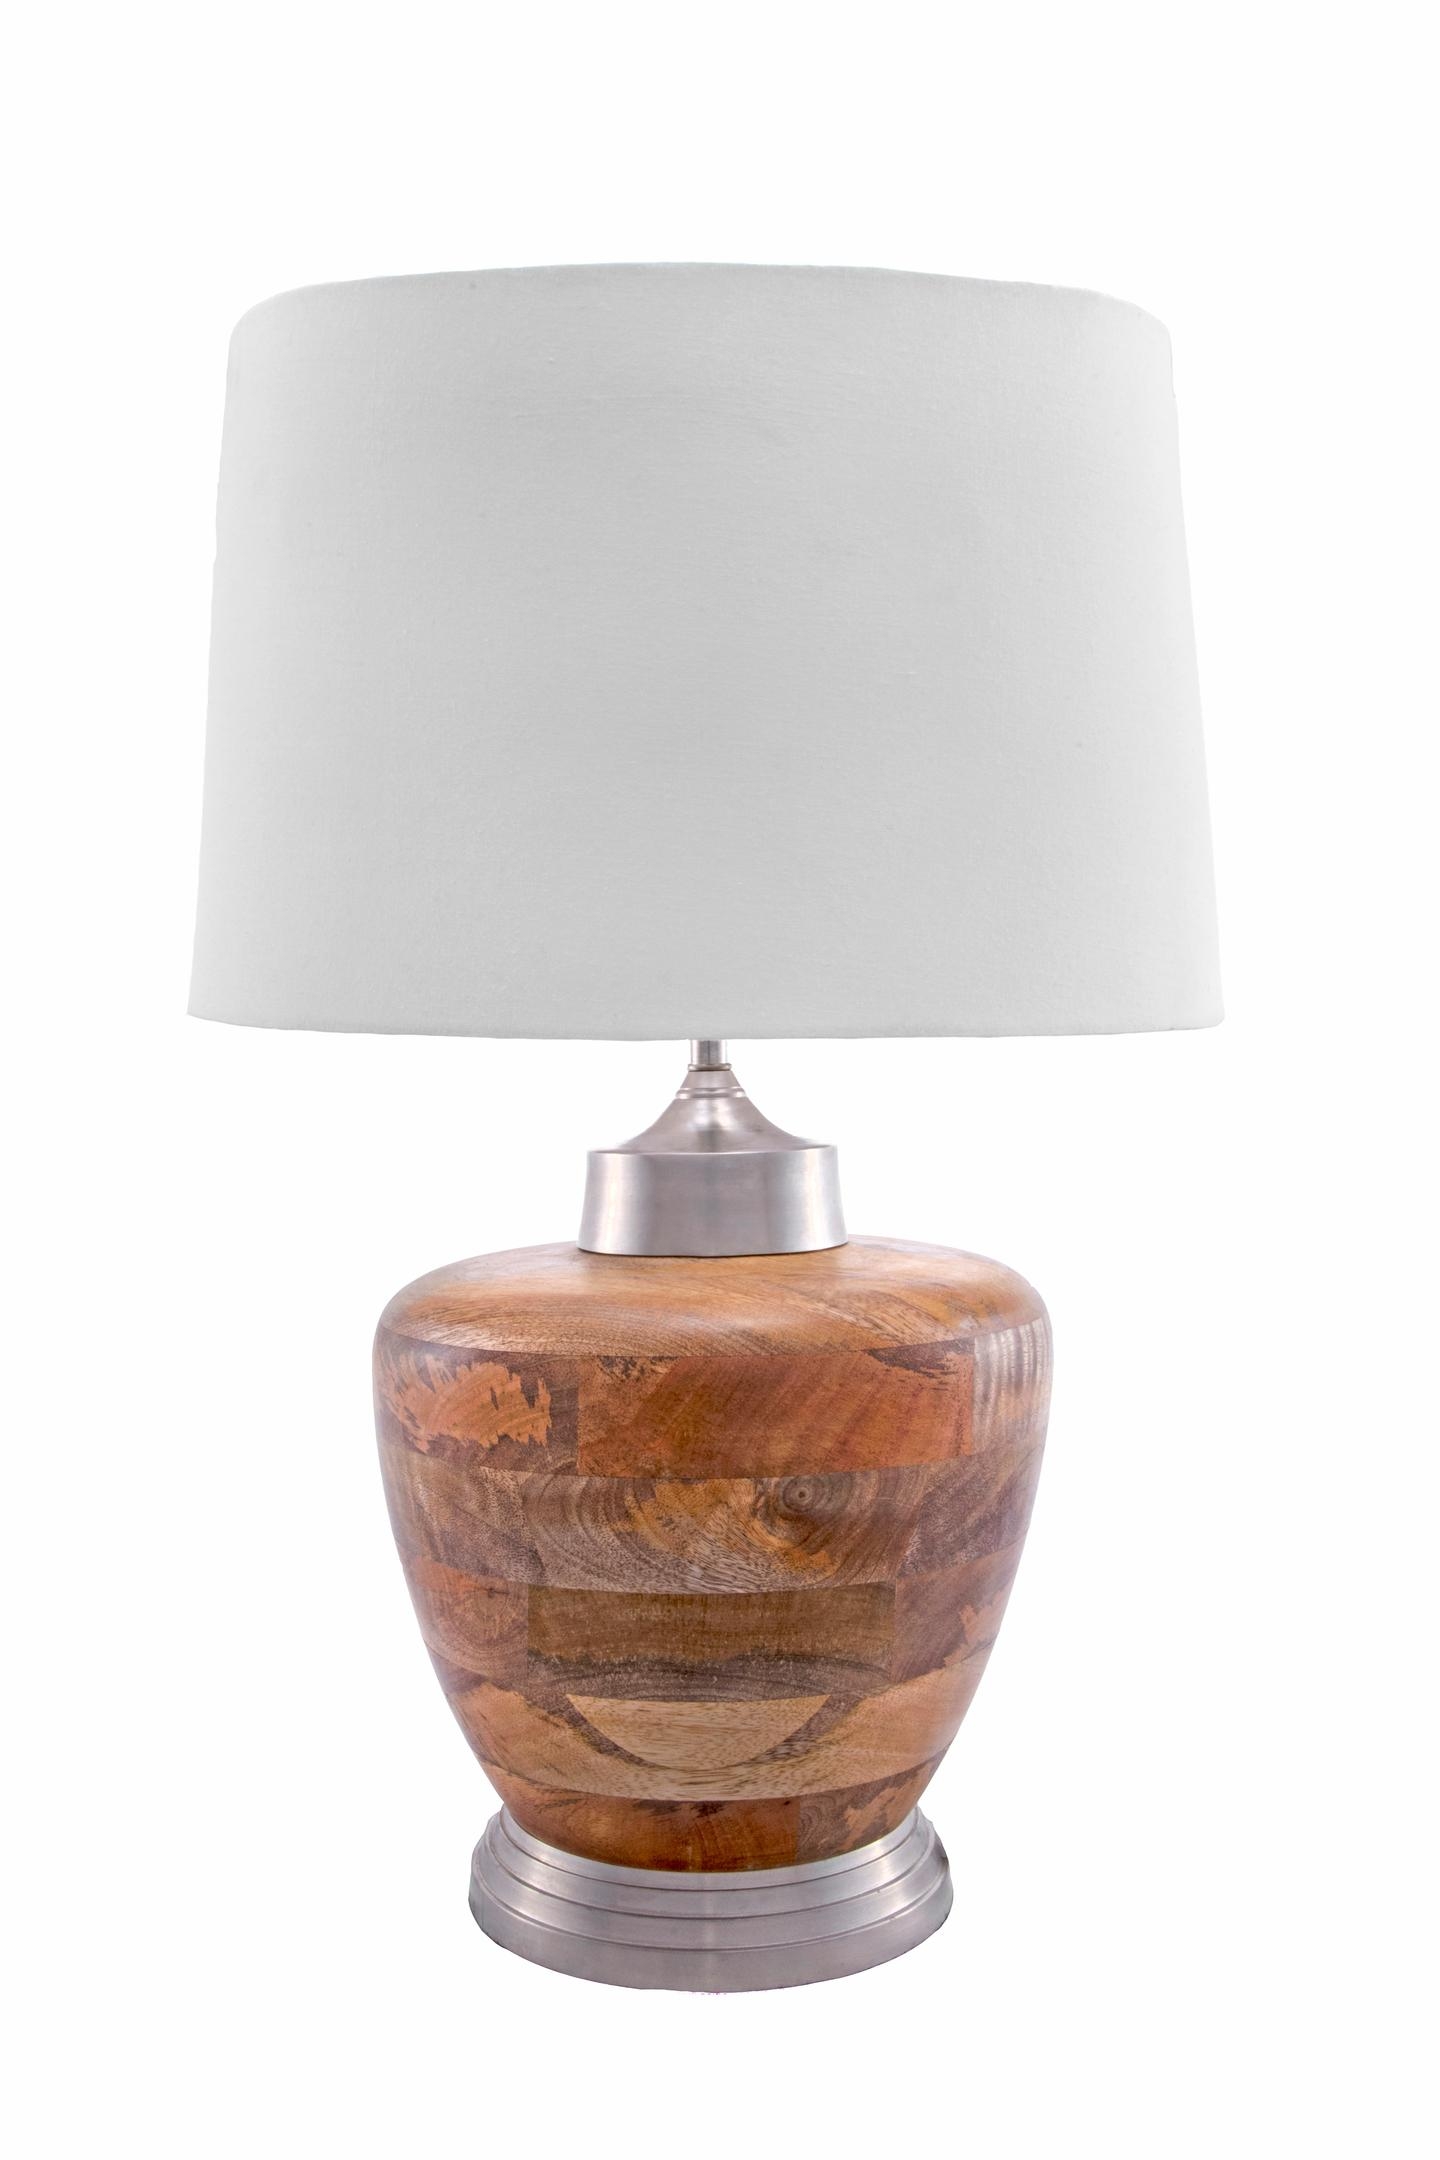 Blaine 21" Wood Table Lamp - Image 1